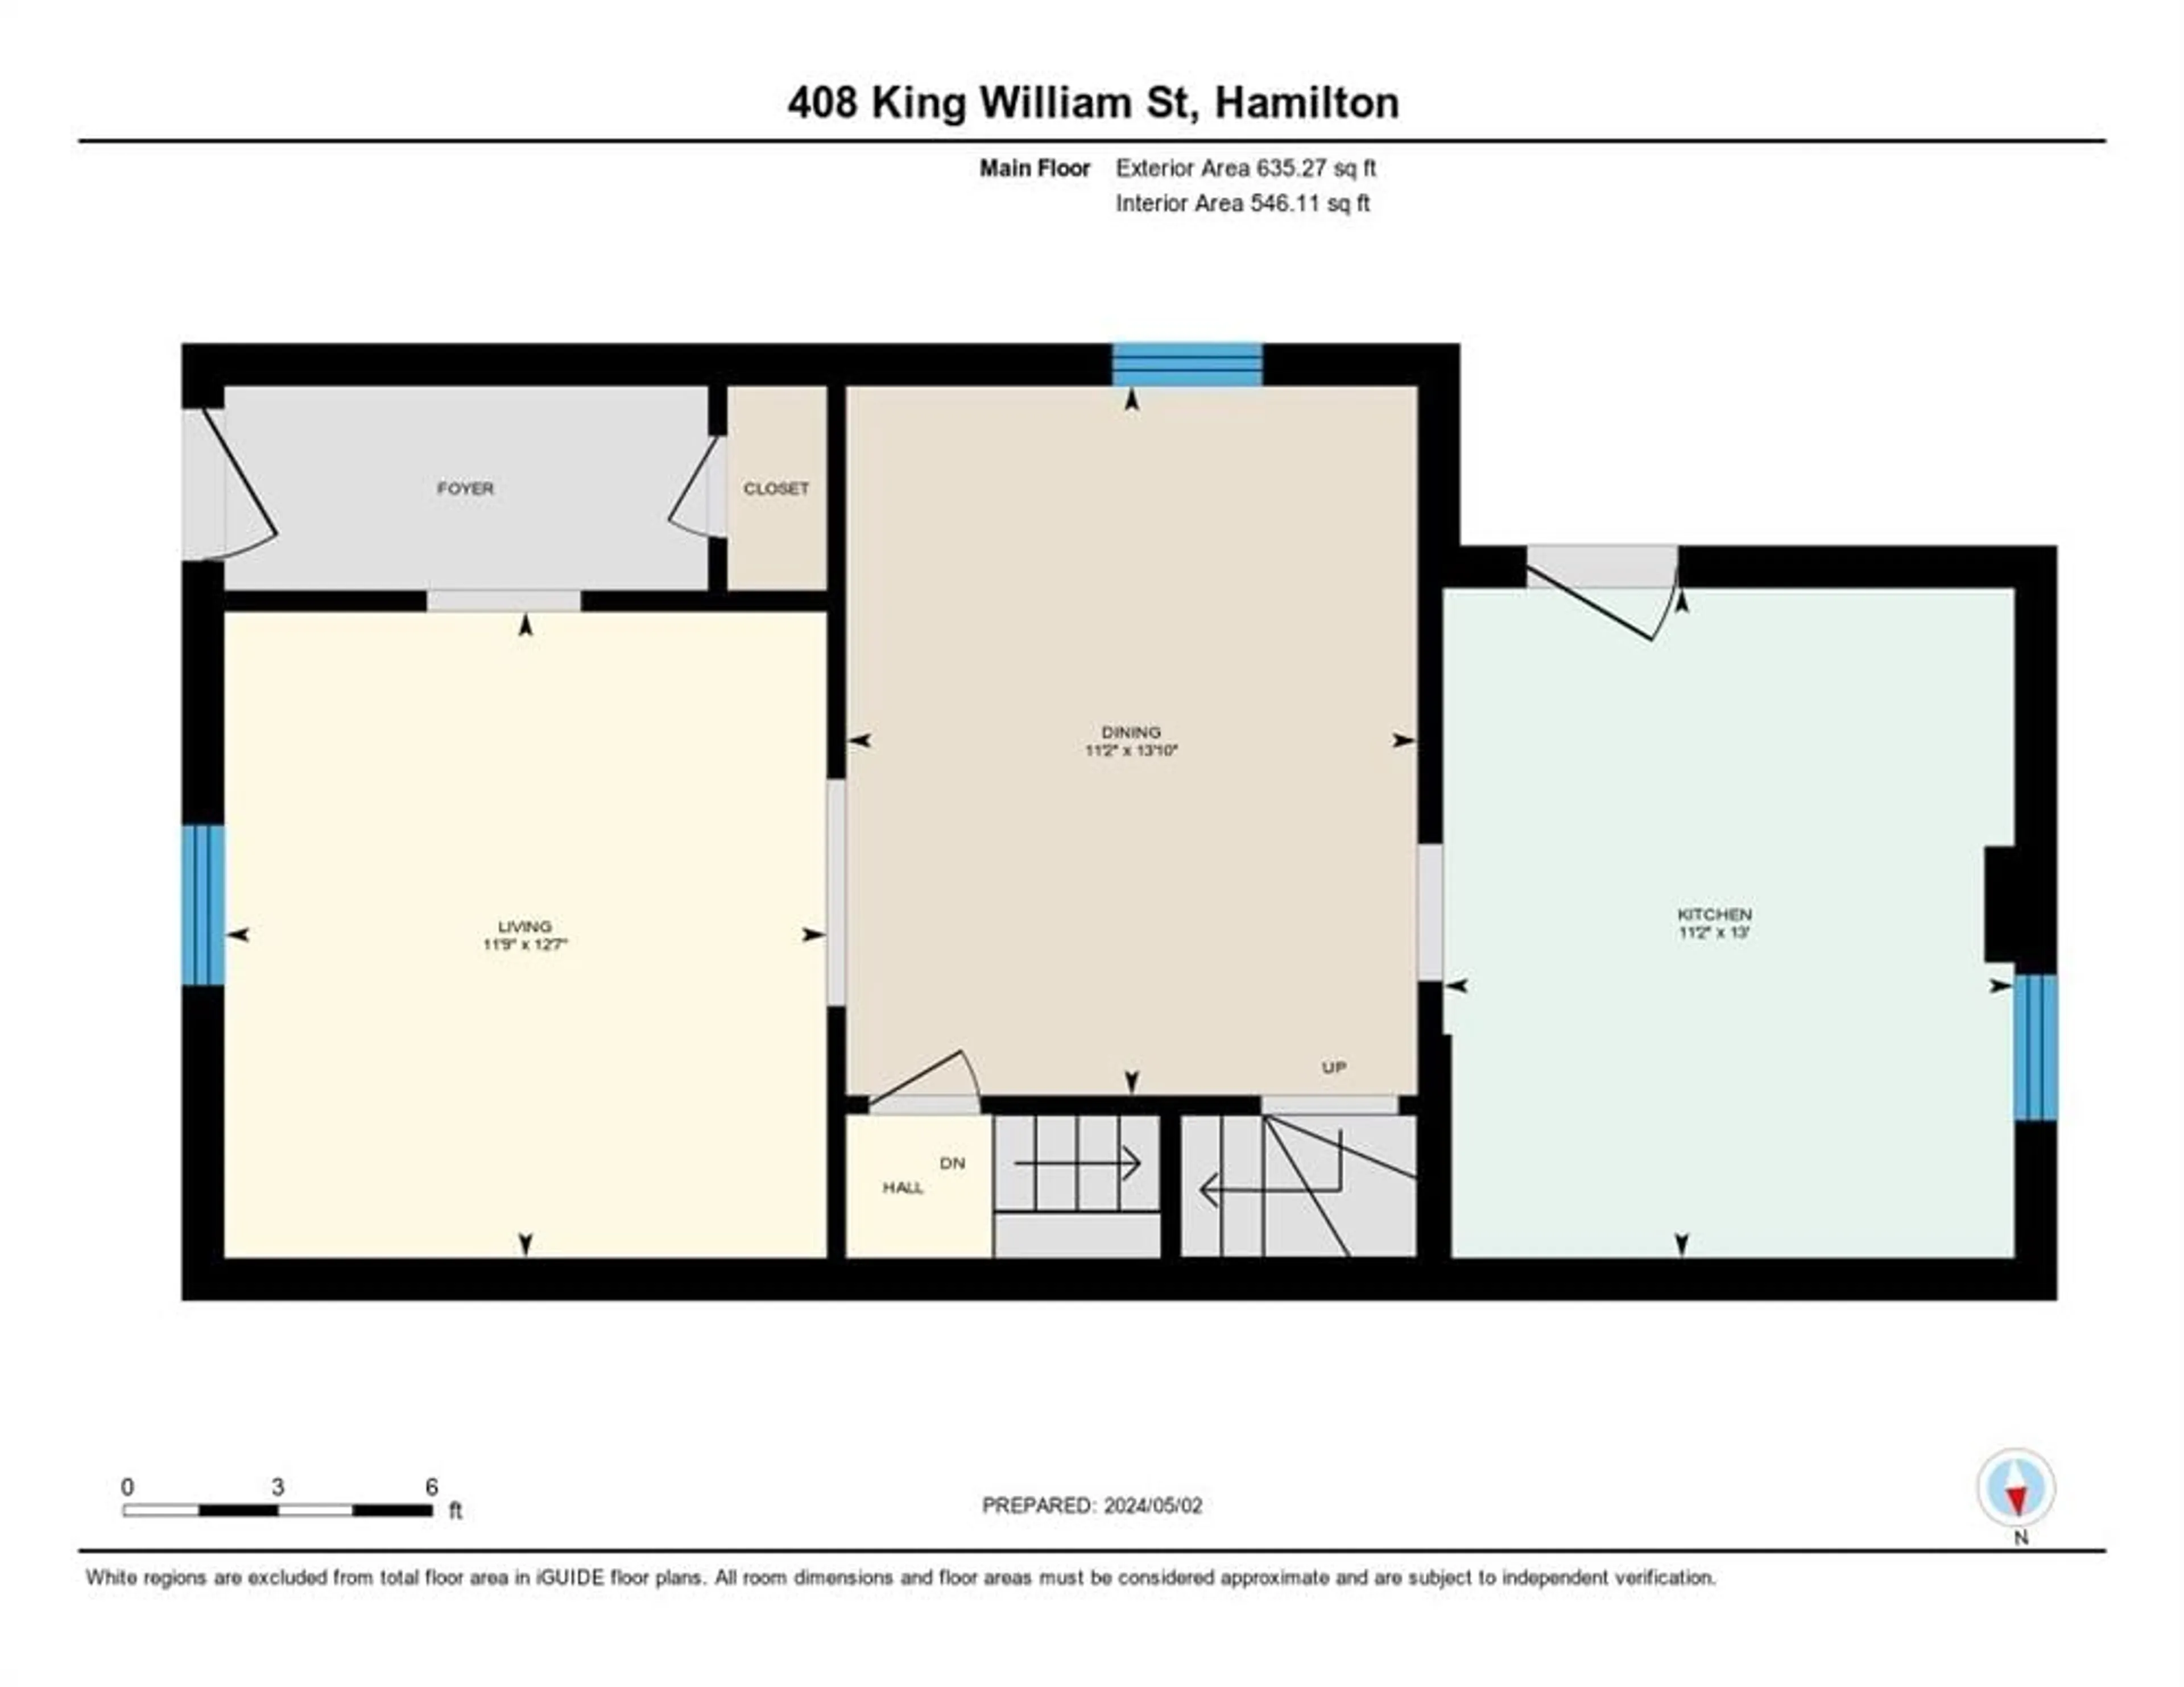 Floor plan for 408 KING WILLIAM St, Hamilton Ontario L8L 1P7